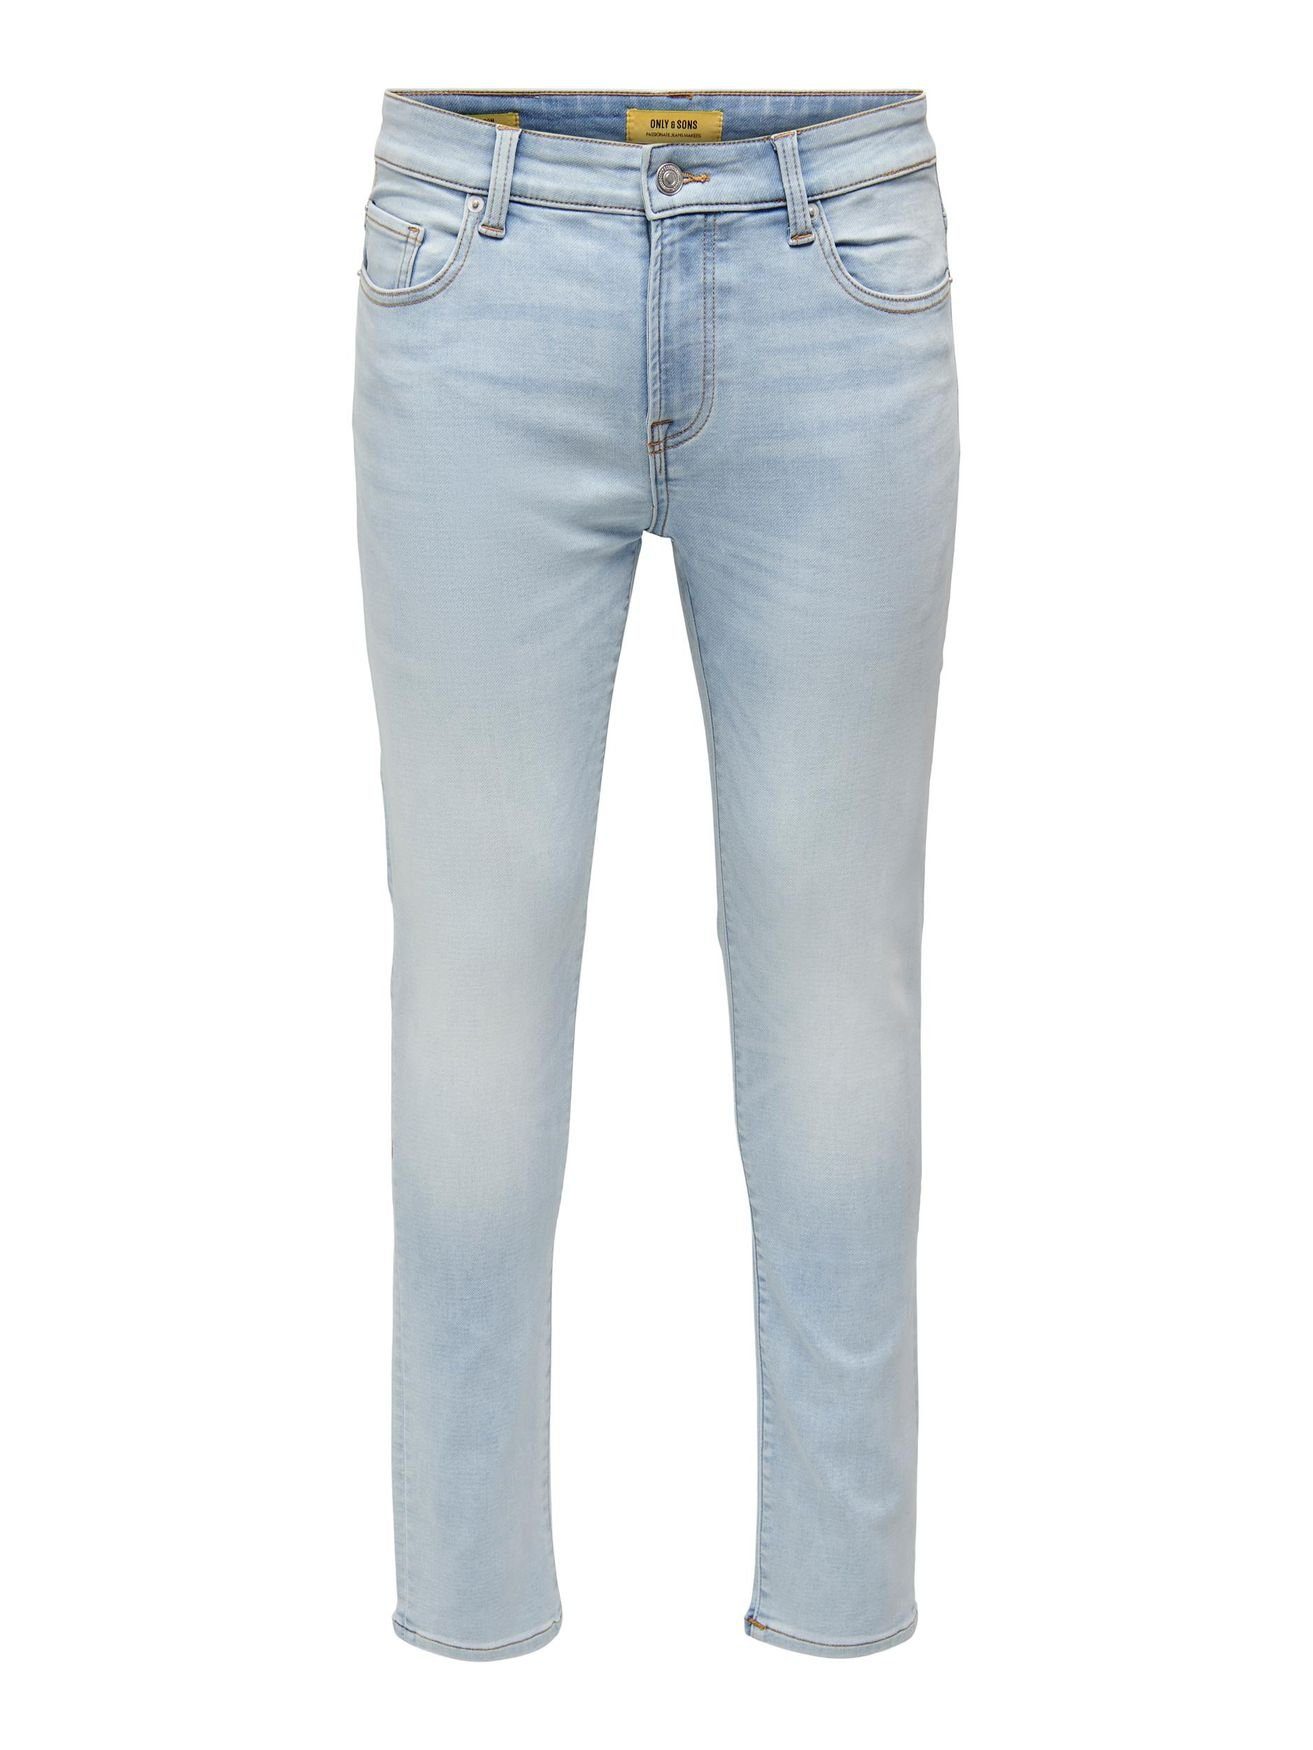 ONLY & SONS Slim-fit-Jeans ONSLOOM SLIM BLEACH BLUE JOG 5029 JEANS -  22025029 4788 in Blau